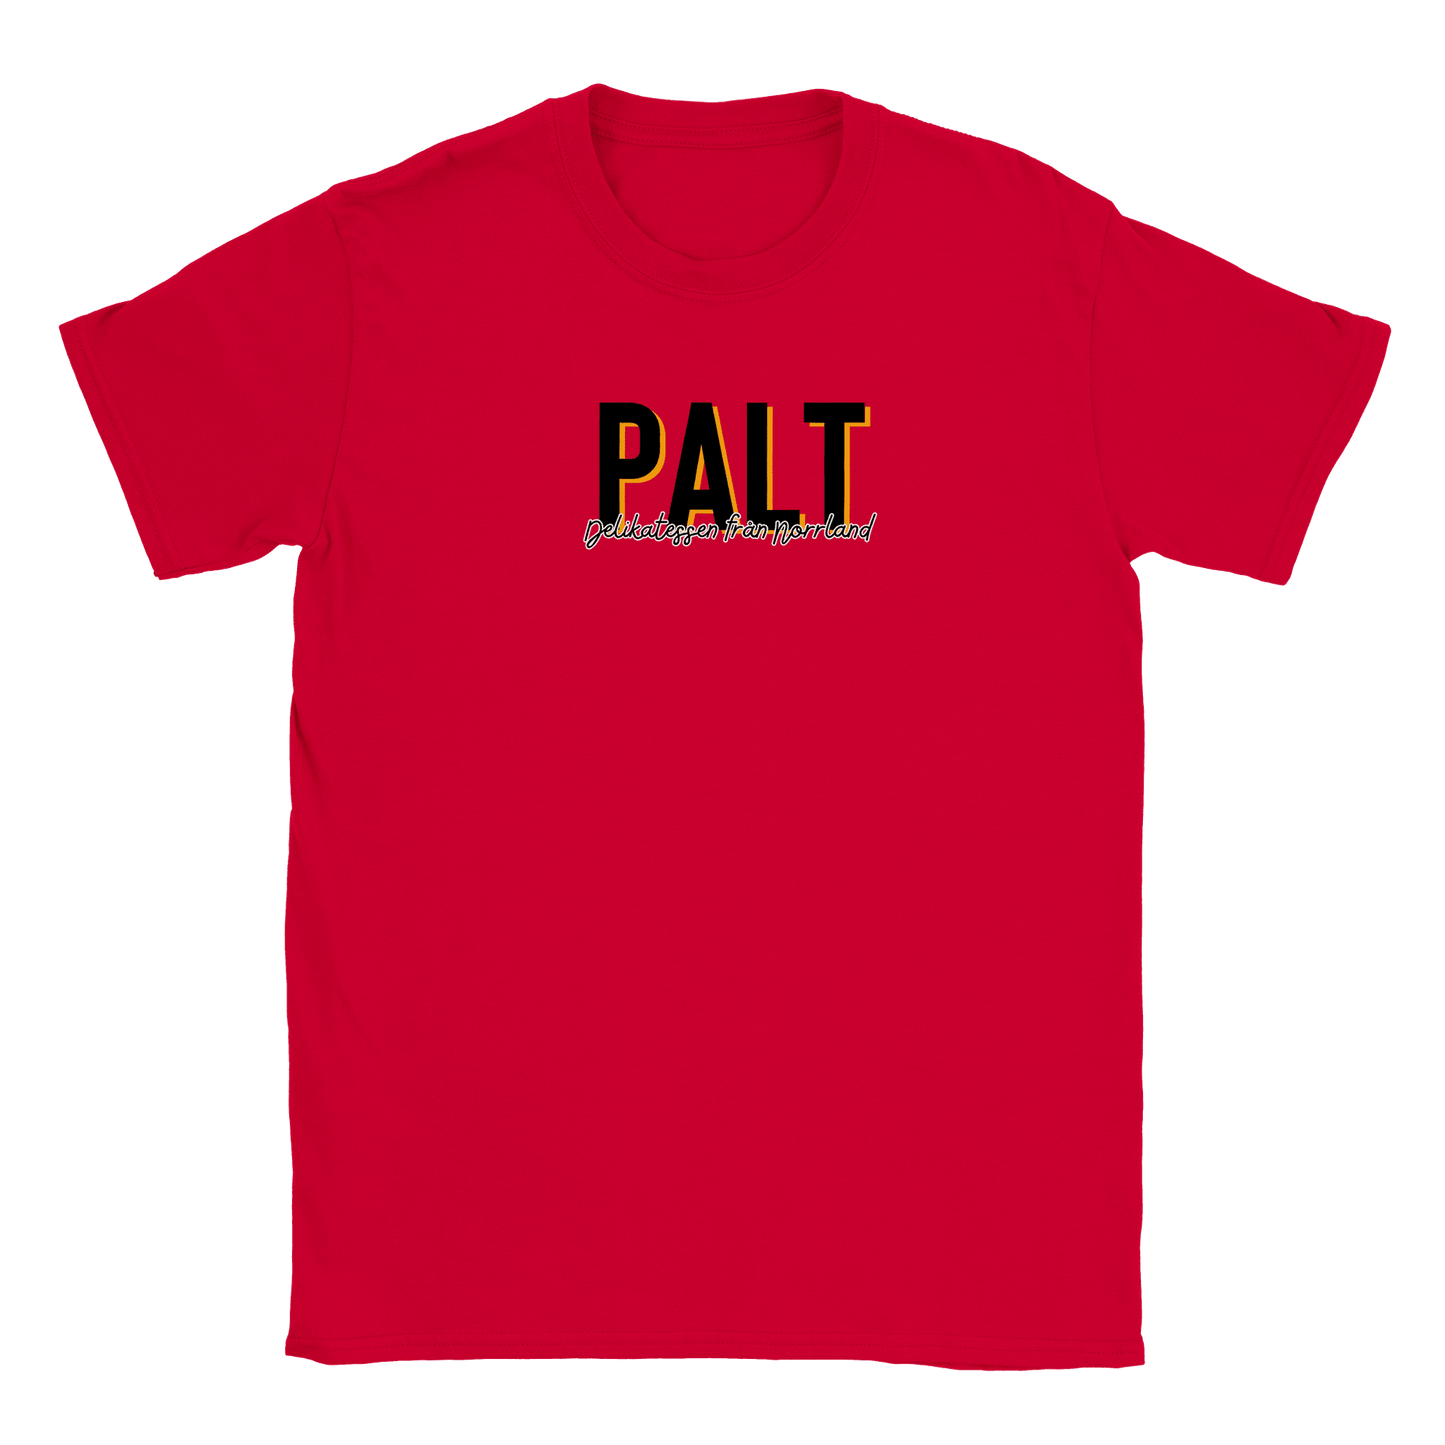 Palt - T-shirt Röd